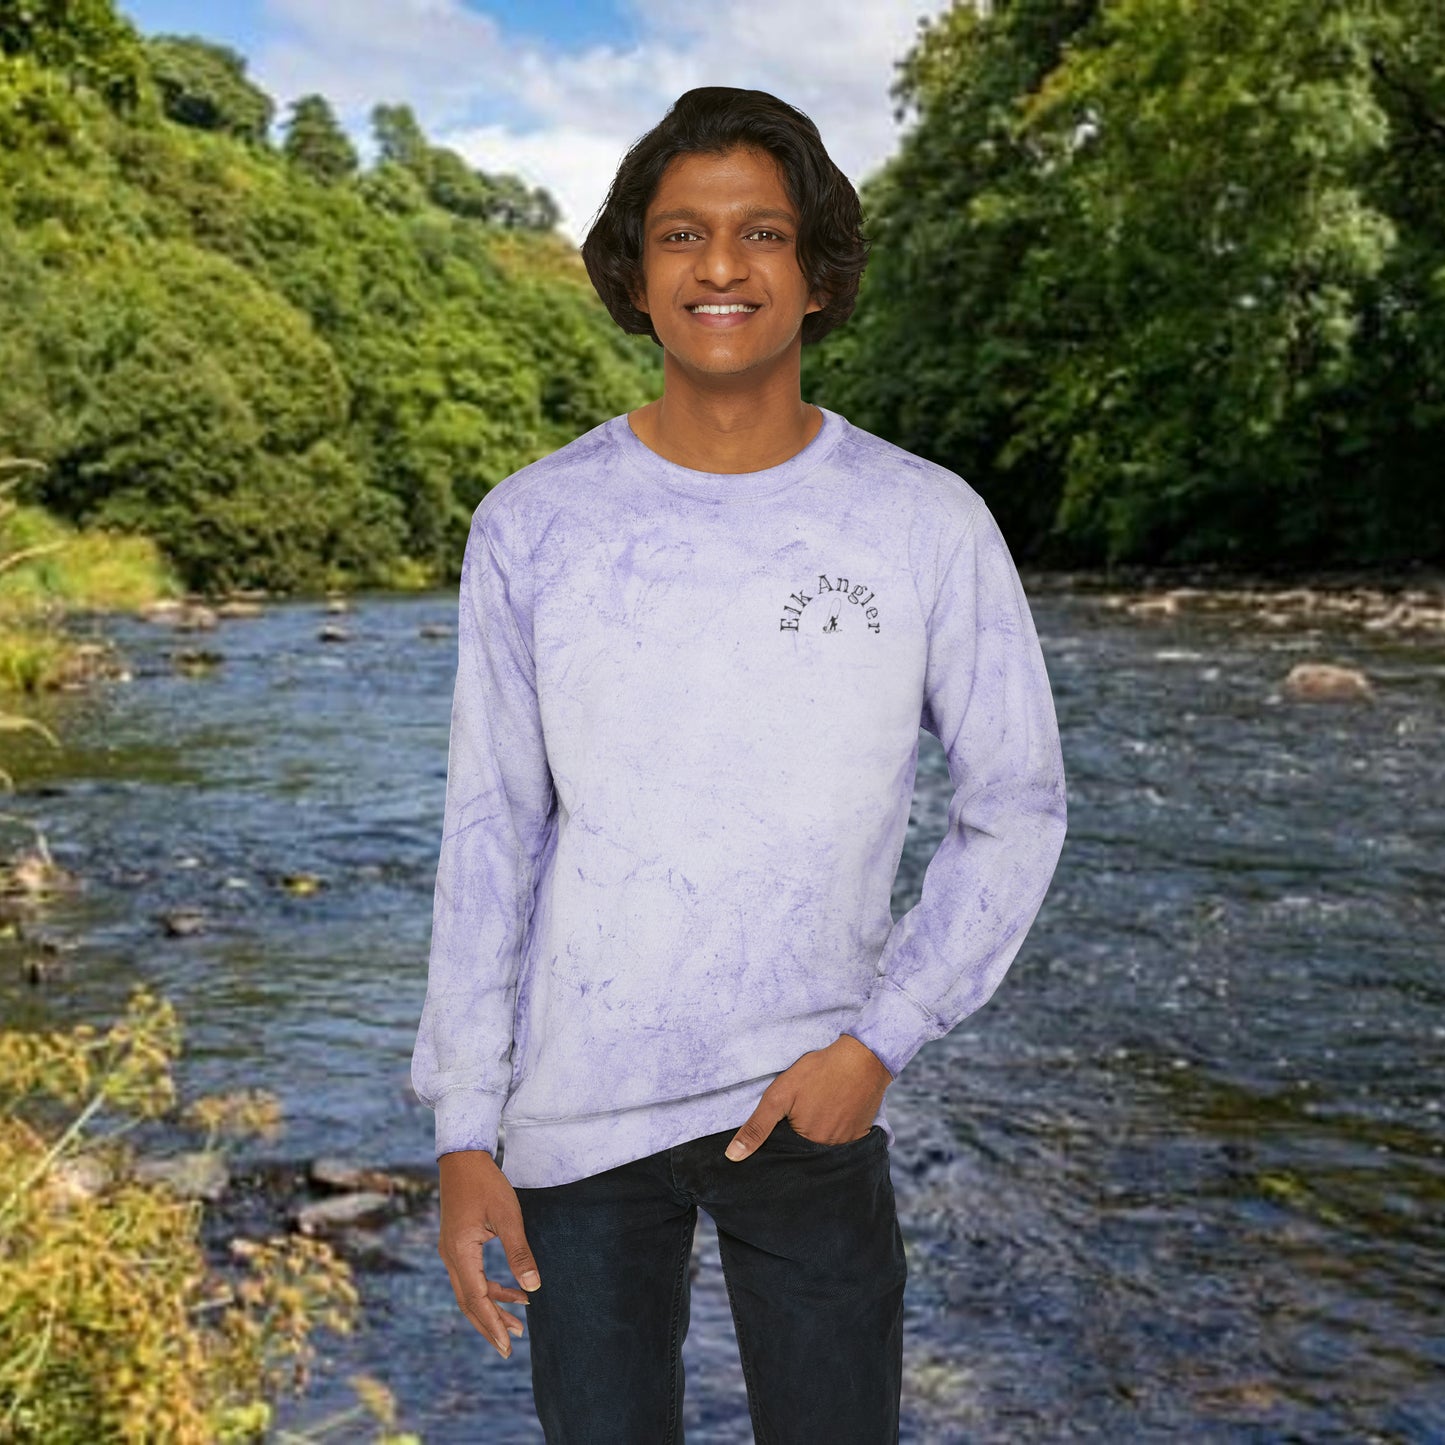 Flyfishing Sweatshirt, Fishing Sweatshirt,  Gift for Fisherman